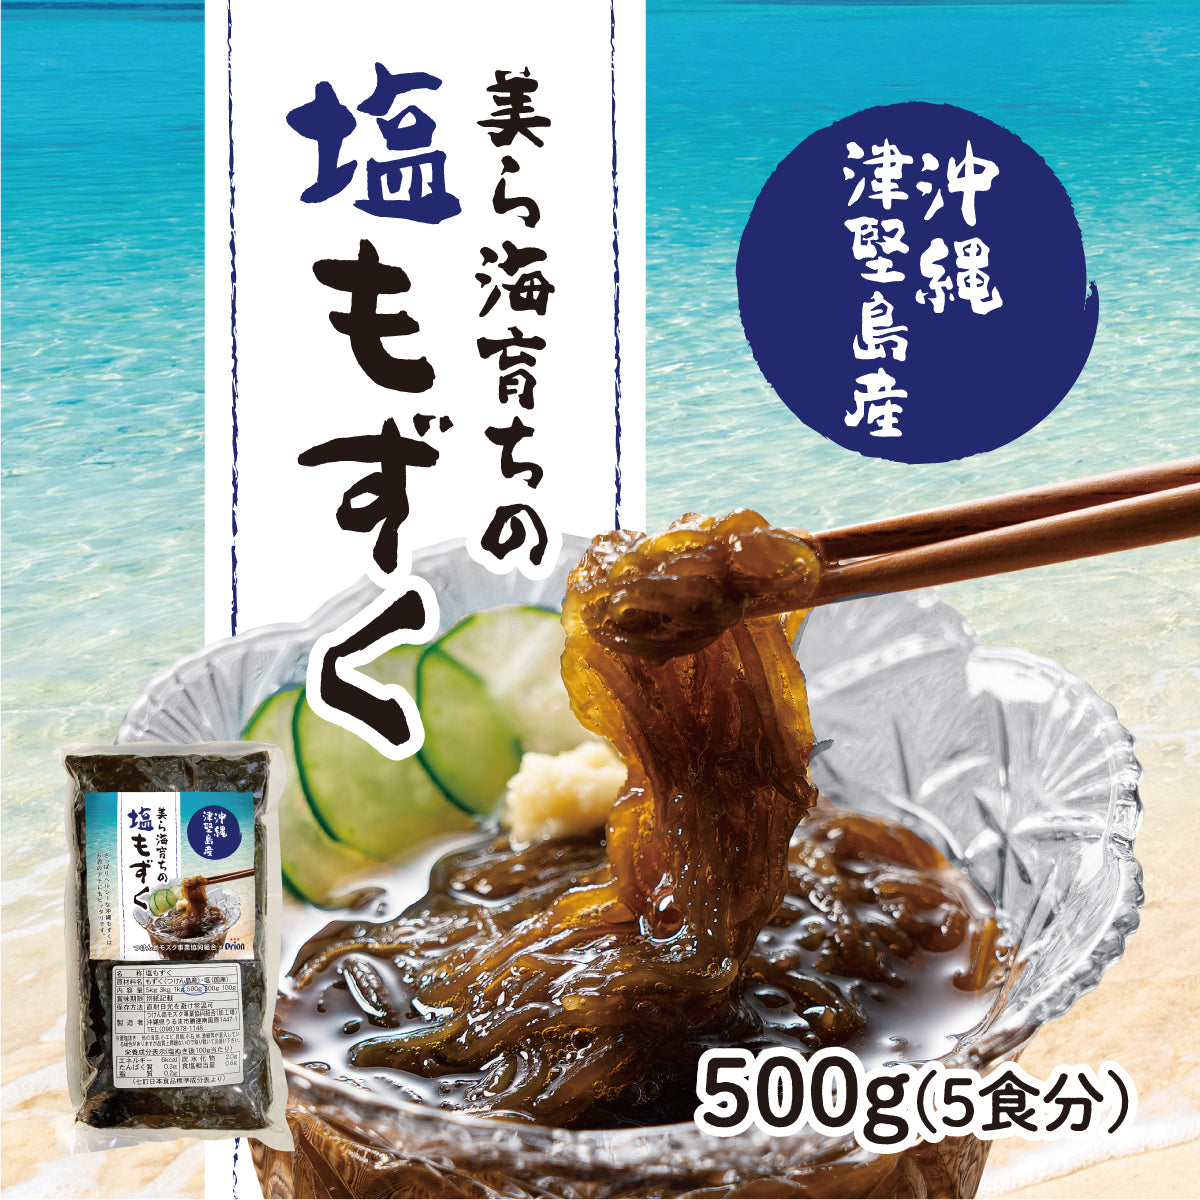 シャキシャキ食感。新鮮な沖縄　–　津堅島産の『塩もずく（500g・5人前相当）』　オリオンビール公式通販